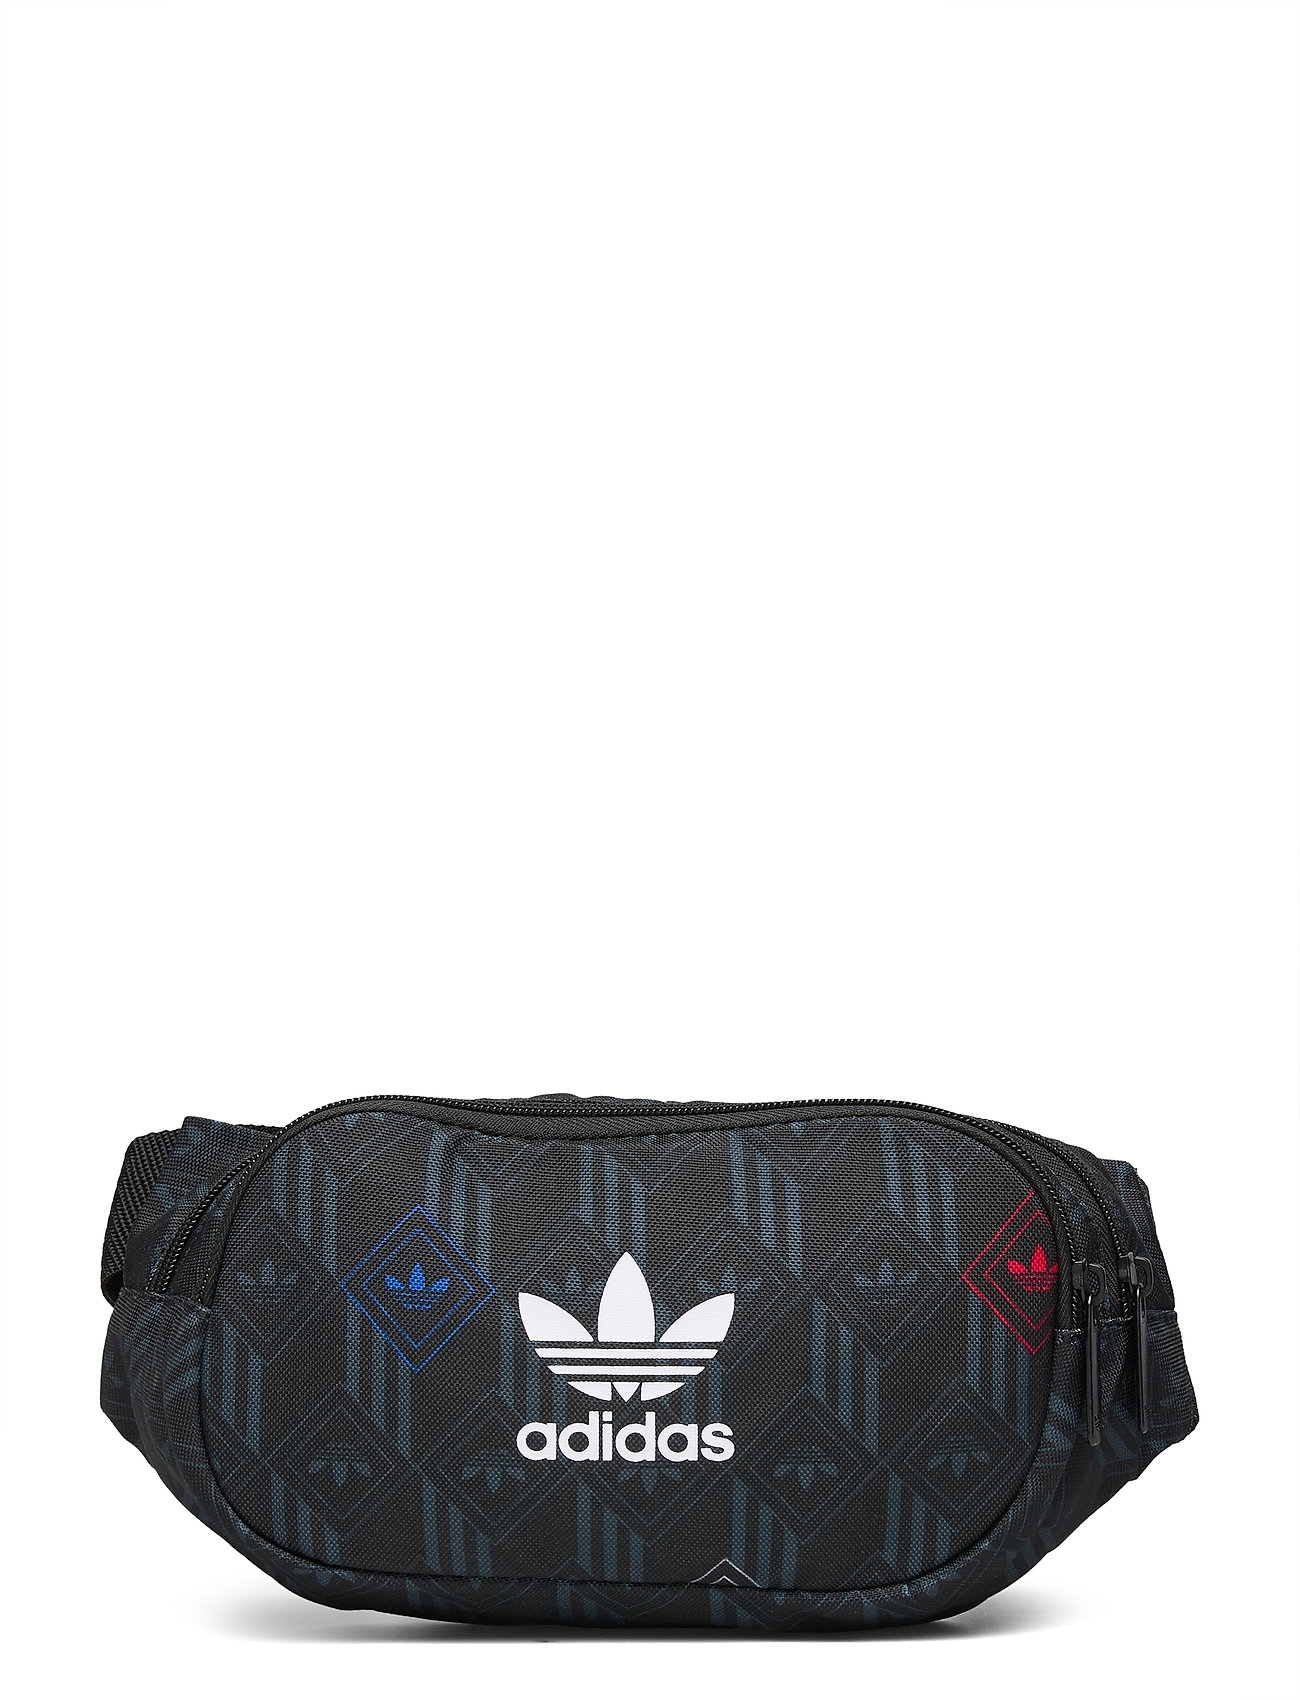 Adidas bæltetasker – Waistbag Bum Bag Taske Sort Adidas Originals til herre i Sort - Pashion.dk